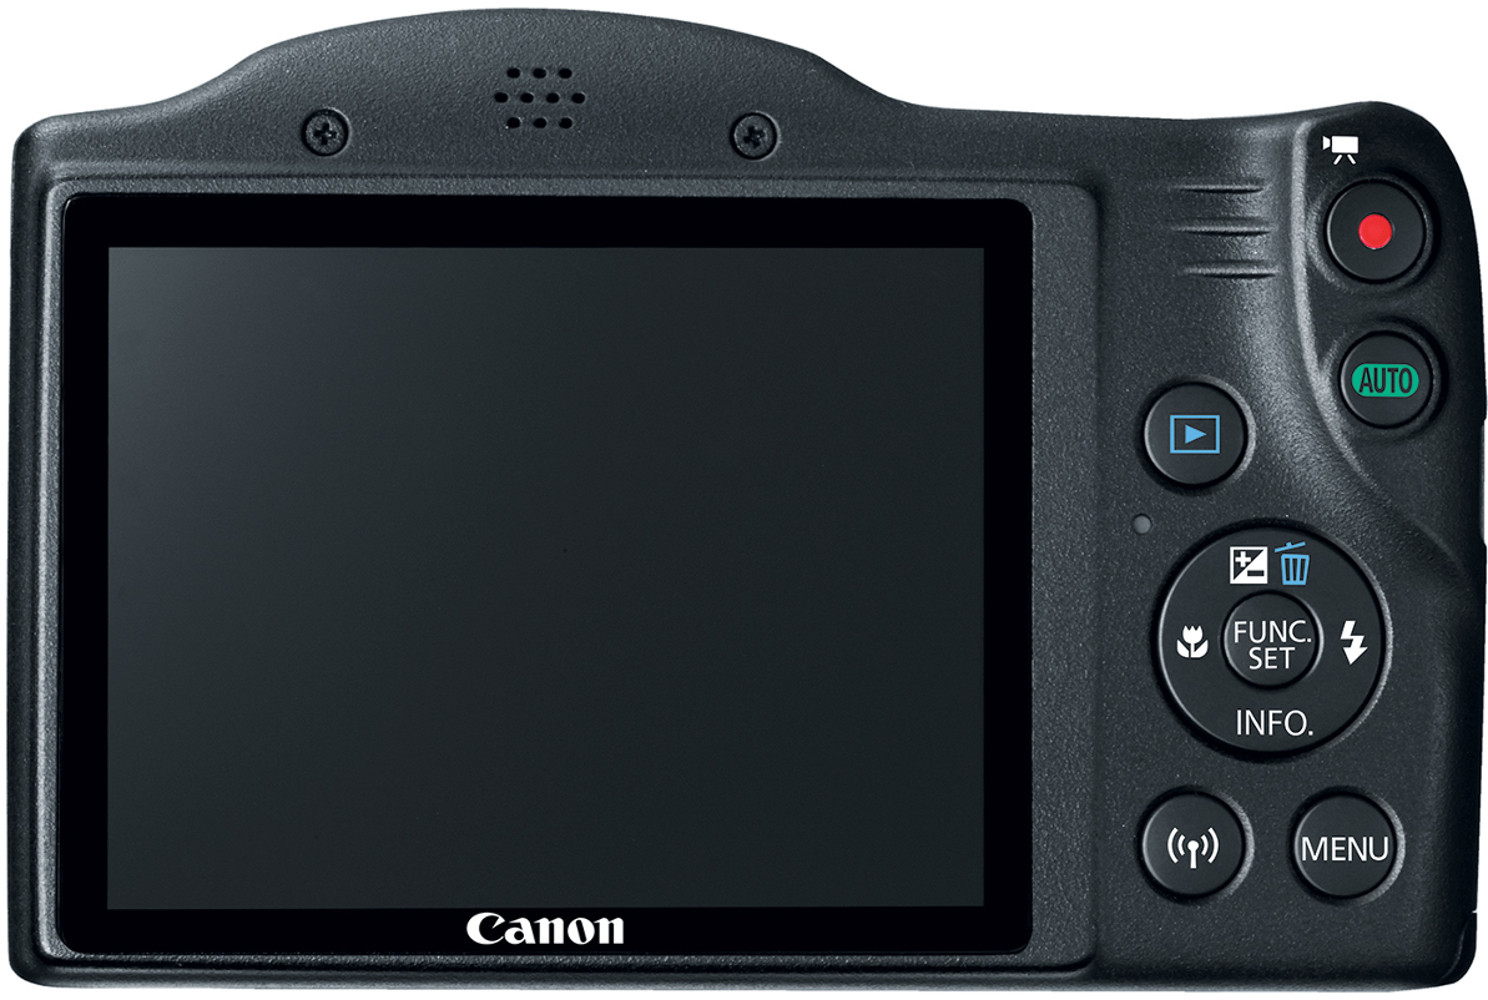 20.0-Megapixel PowerShot SX420 IS Digital Camera in Black - image 4 of 6